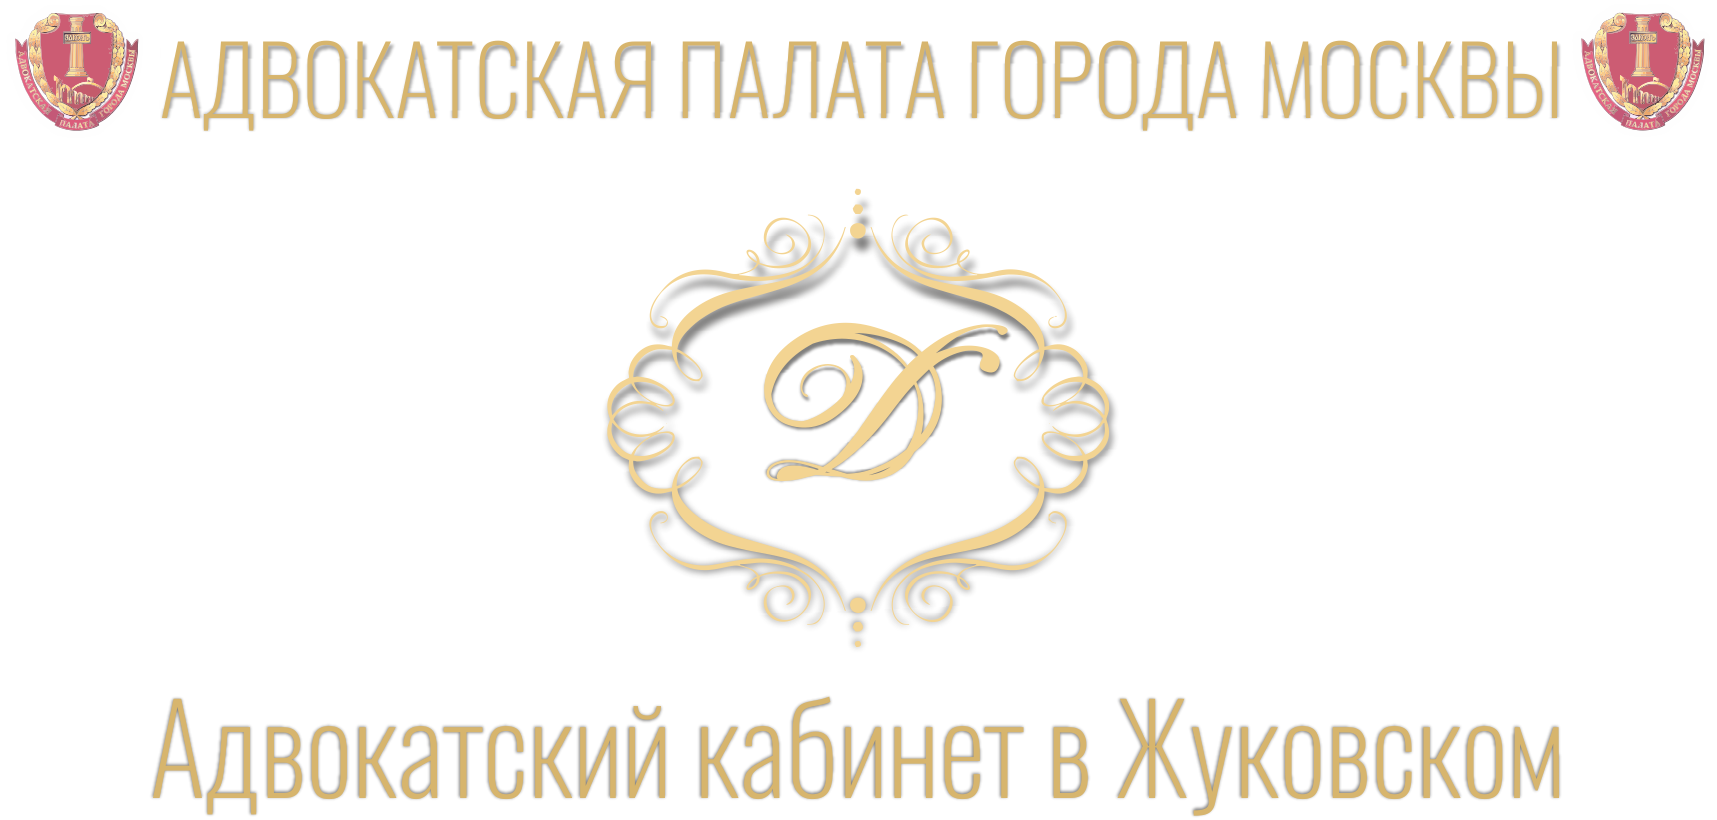 Адвокатский кабинет эмблема. Адвокатская палата Московской области логотип вектор.